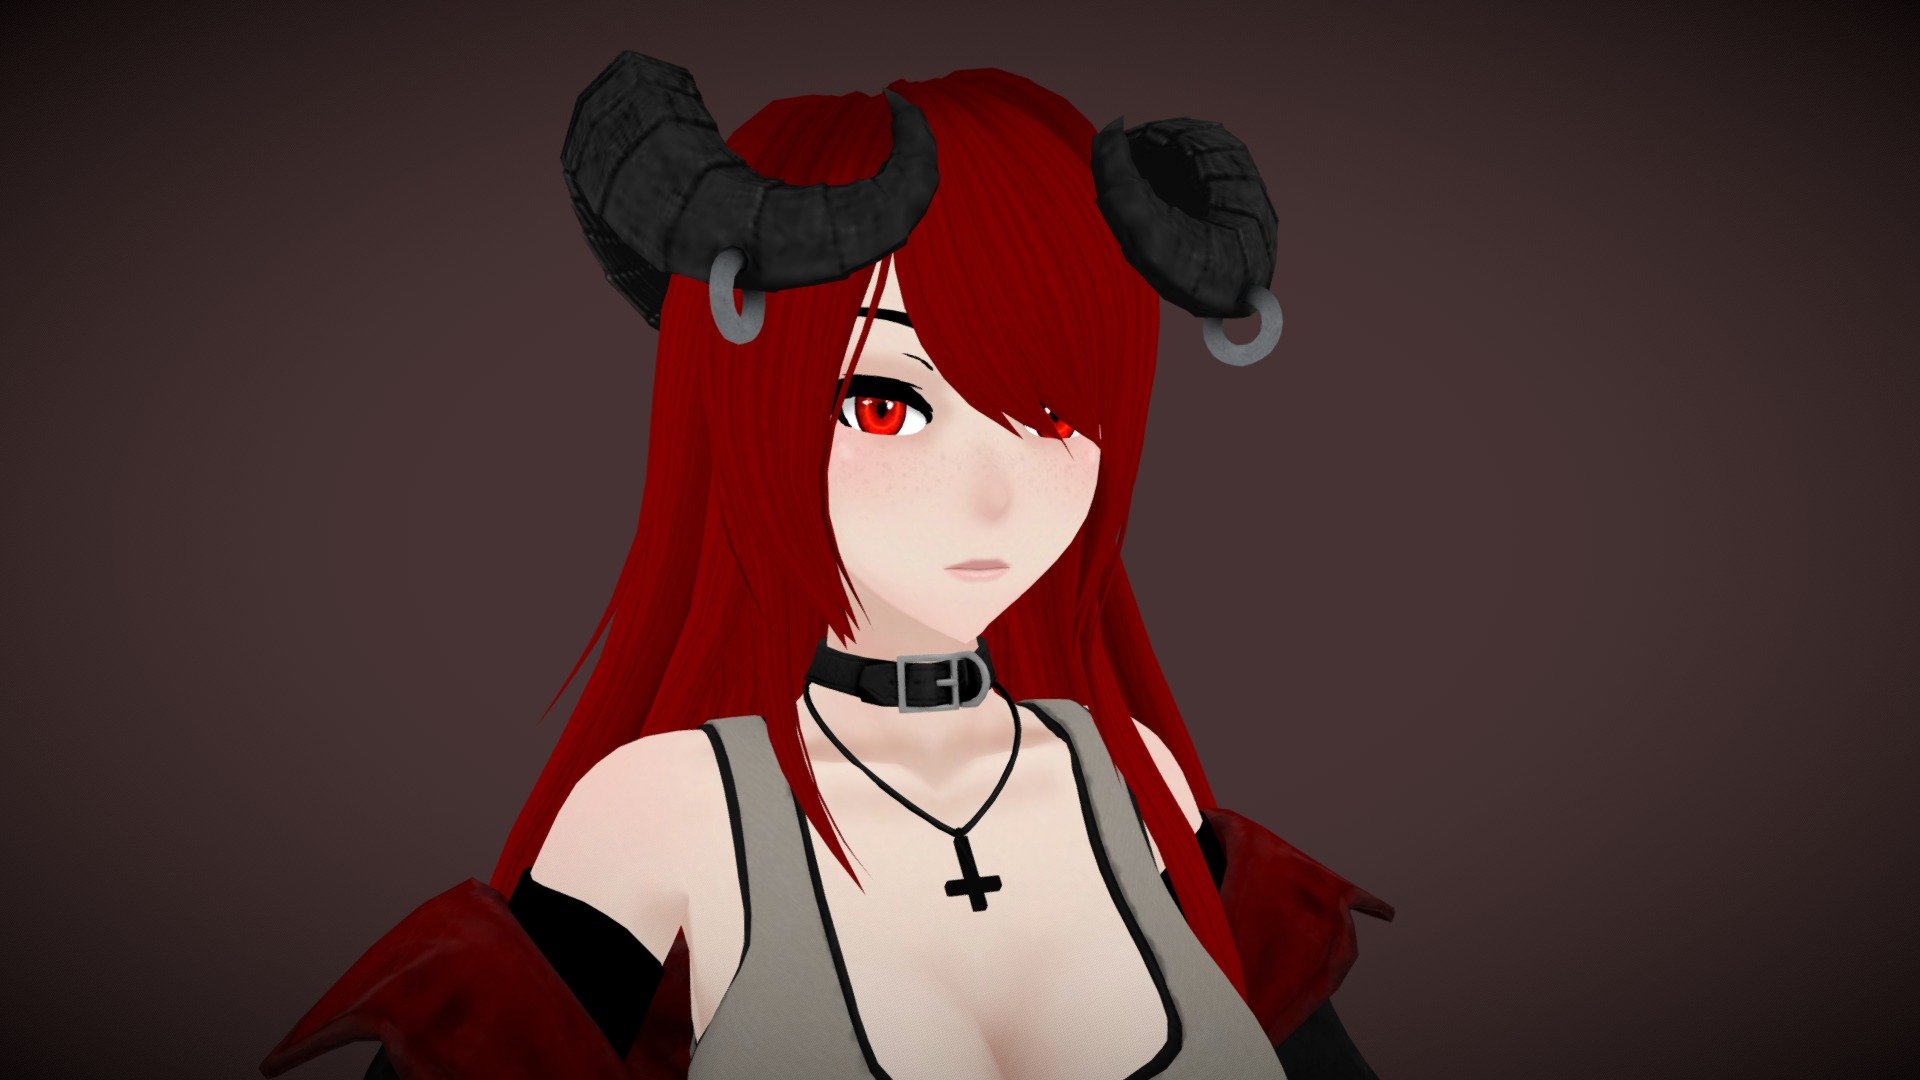 Với VRChat avatar nữ quỷ tóc Đỏ, bất kỳ ai cũng sẽ trở thành tâm điểm khi xuất hiện trong game. 3D model của Phiona Blake mang lại sự sống động, sắc nét cho avatar, làm cho những cuộc trò chuyện, tiếng cười và kỷ niệm càng thêm đáng nhớ.